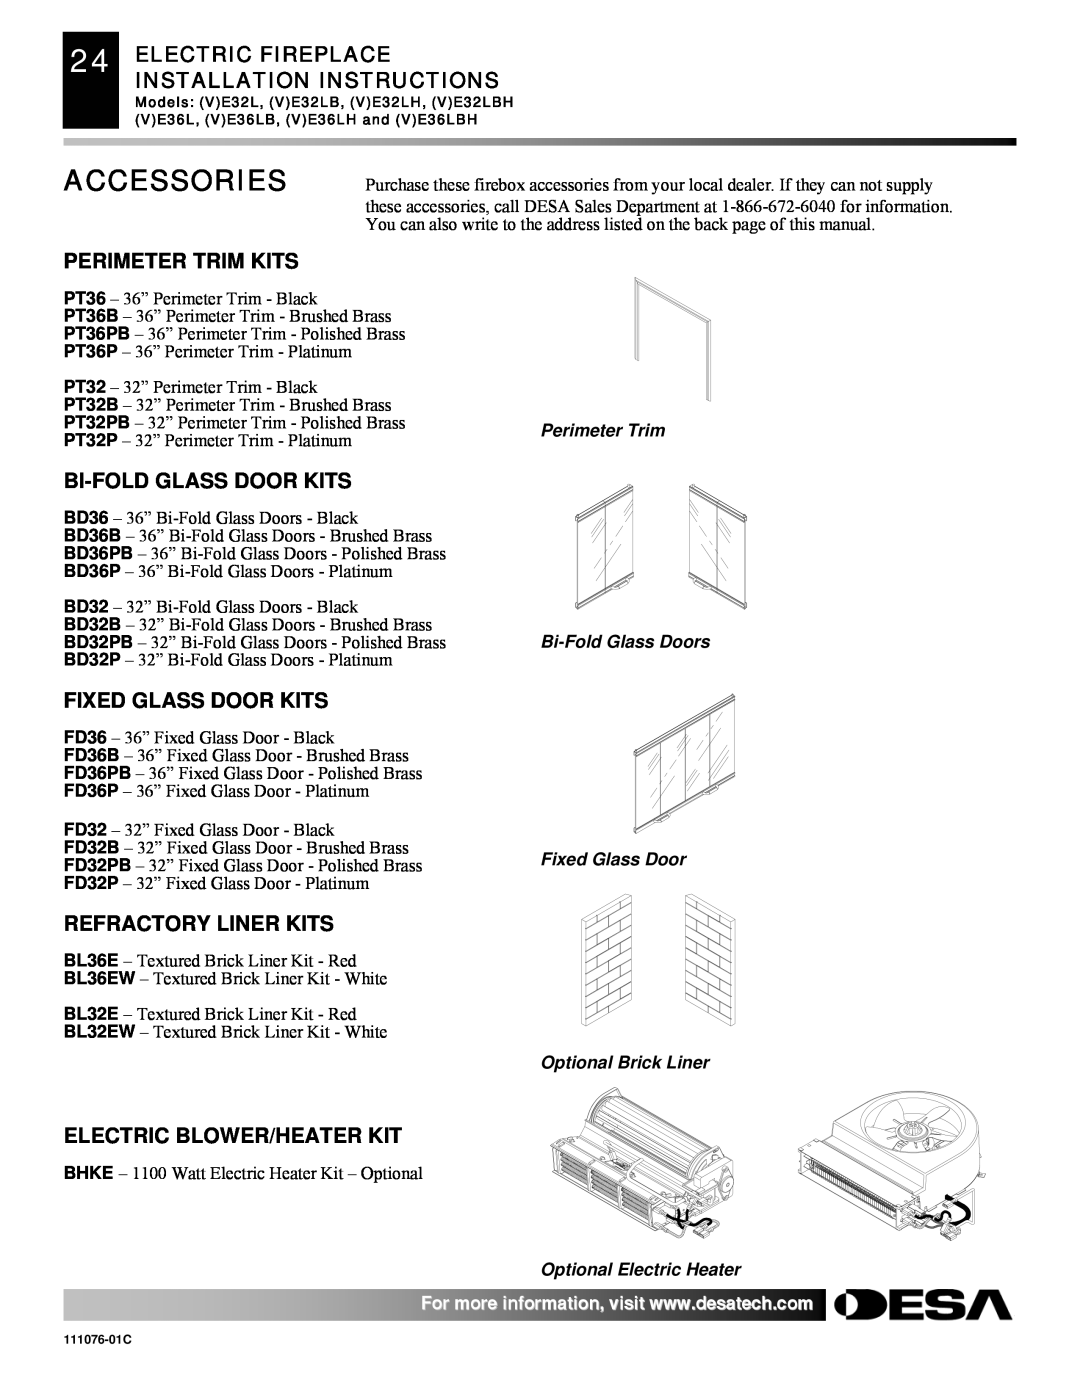 Desa E32, VE36, VE32, E36(L)(B)(H) Accessories, Perimeter Trim Kits, Bi-Foldglass Door Kits, Fixed Glass Door Kits 